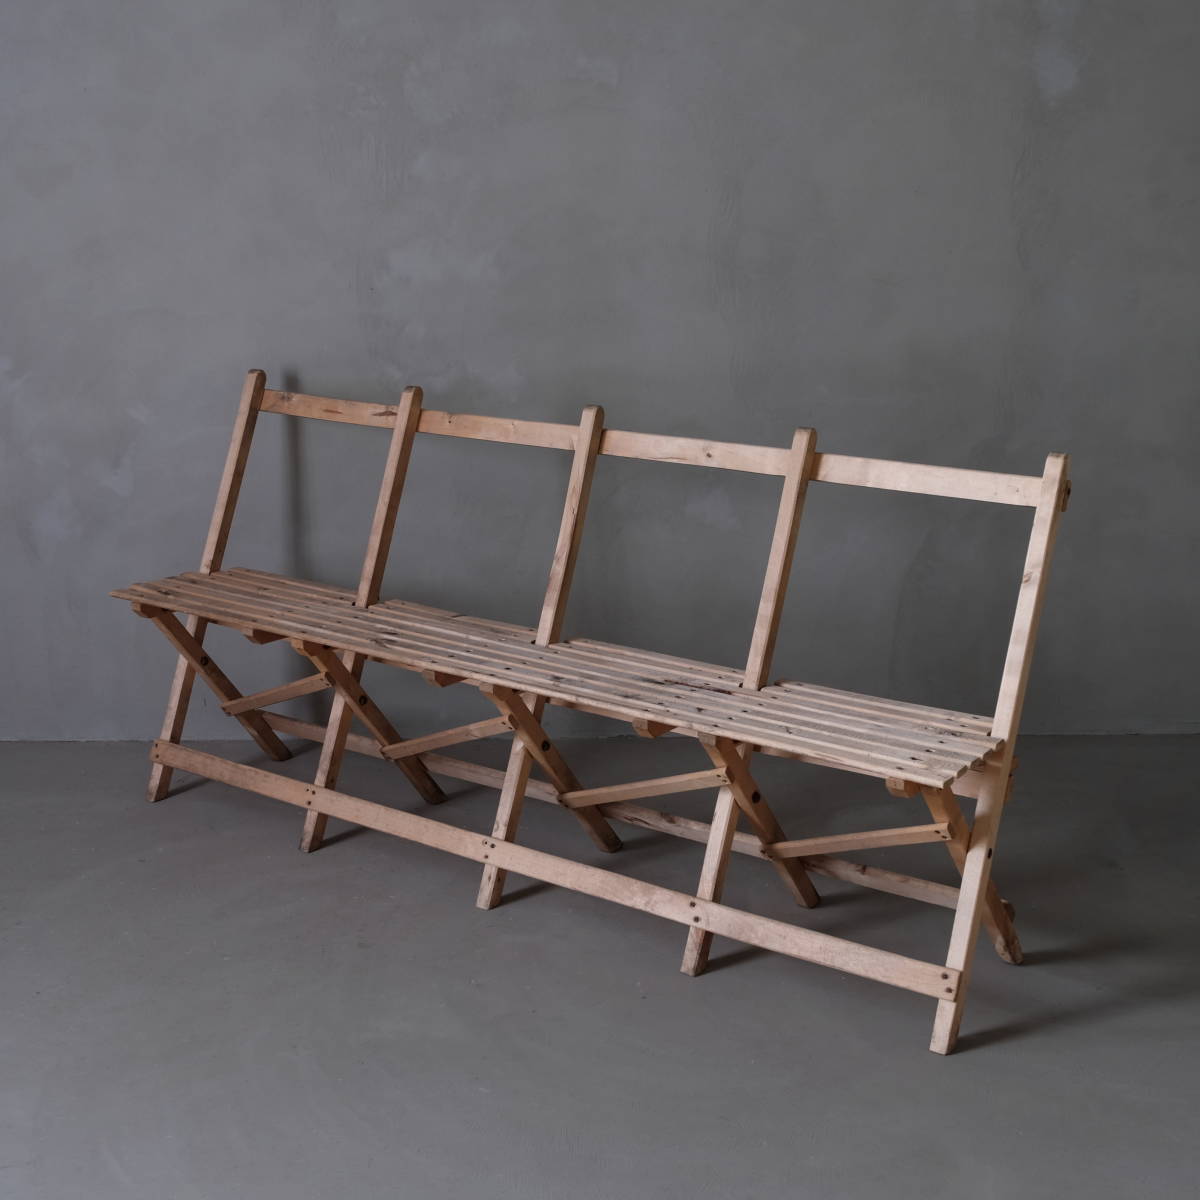 02706 イギリスアンティーク 木製折りたたみベンチ / 長椅子 チェア 英国 ヴィンテージ 古家具